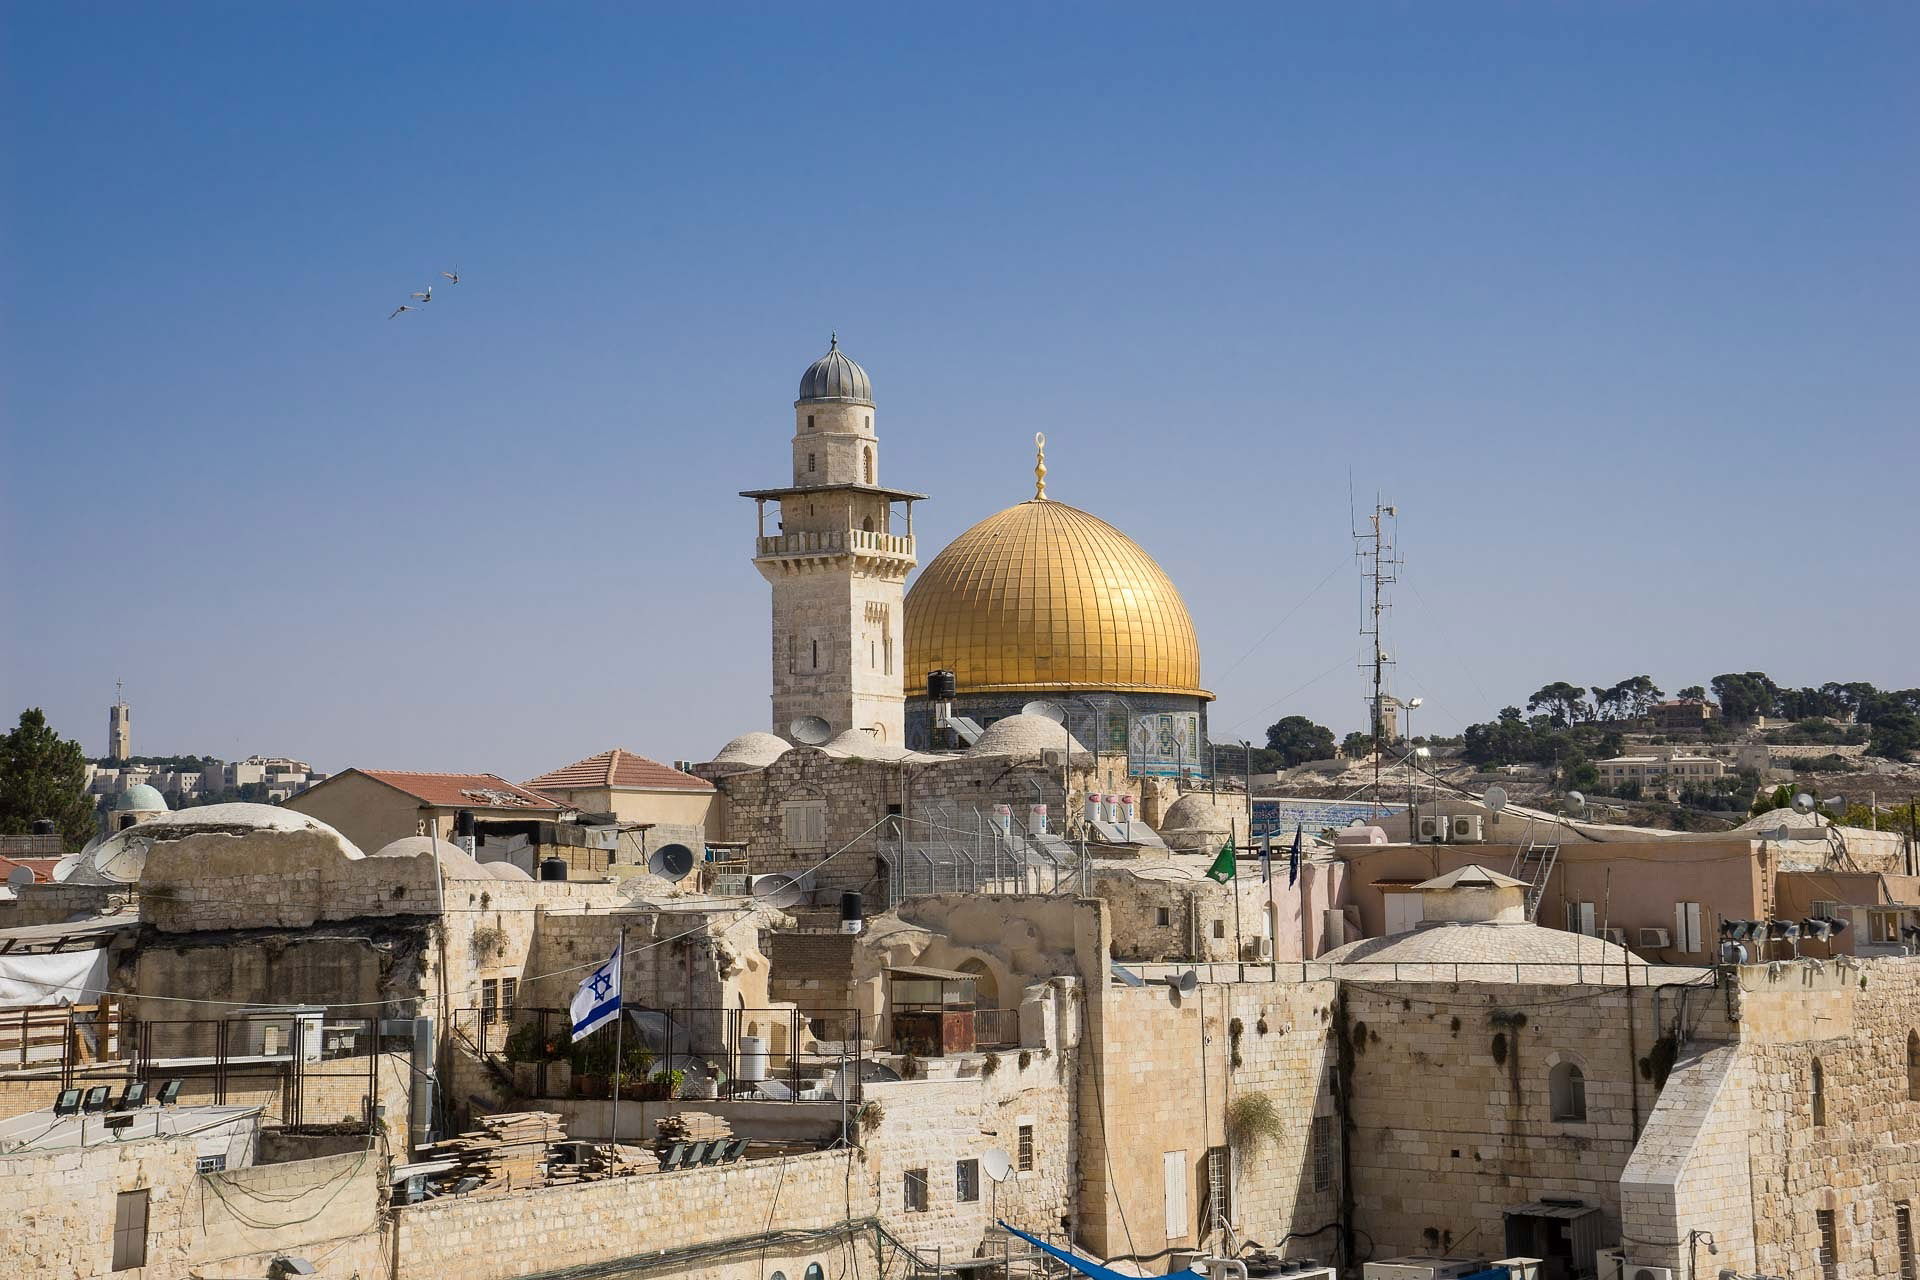 THE OLD CITY OF JERUSALEM